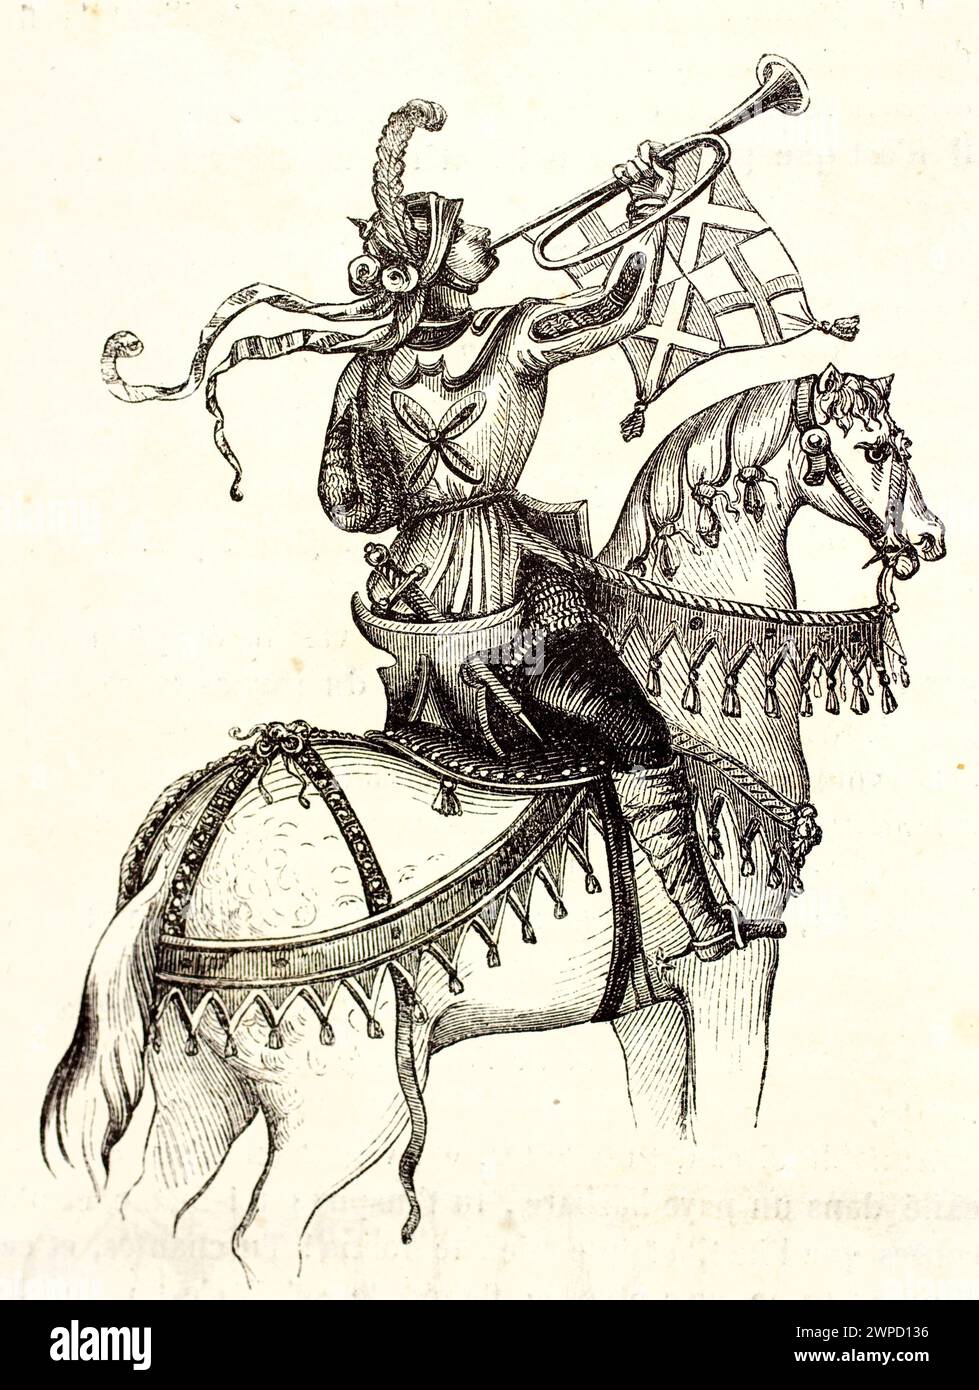 Vieja ilustración grabada de trompetista a caballo. Por autor desconocido, publicado en Magasin pittoresque, París, 1852 Foto de stock